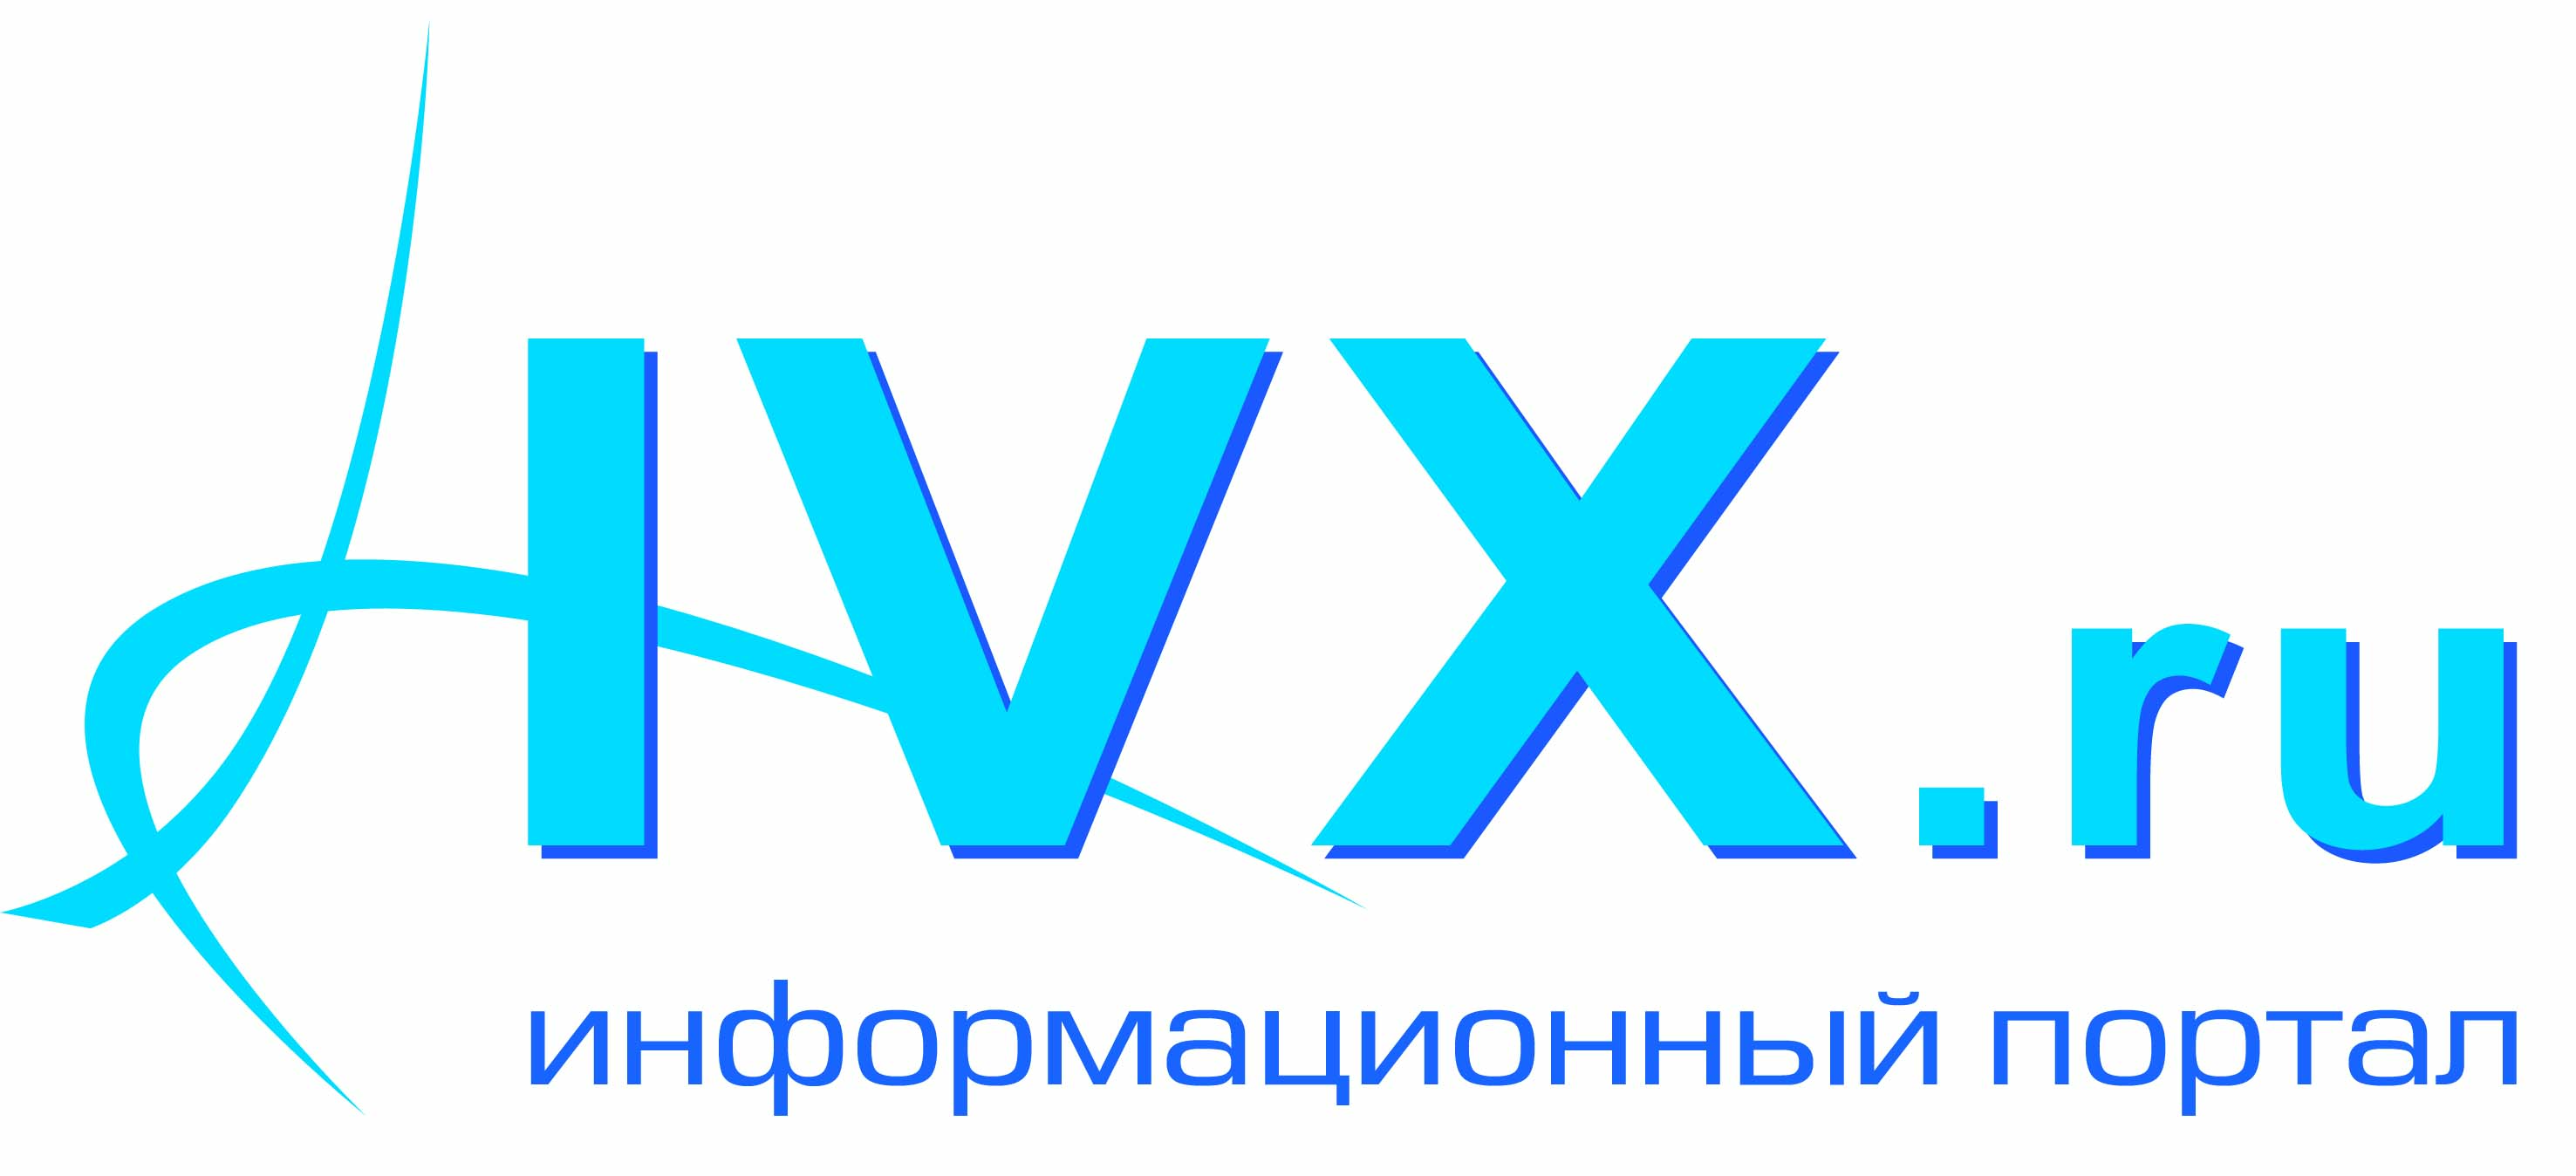 IVX